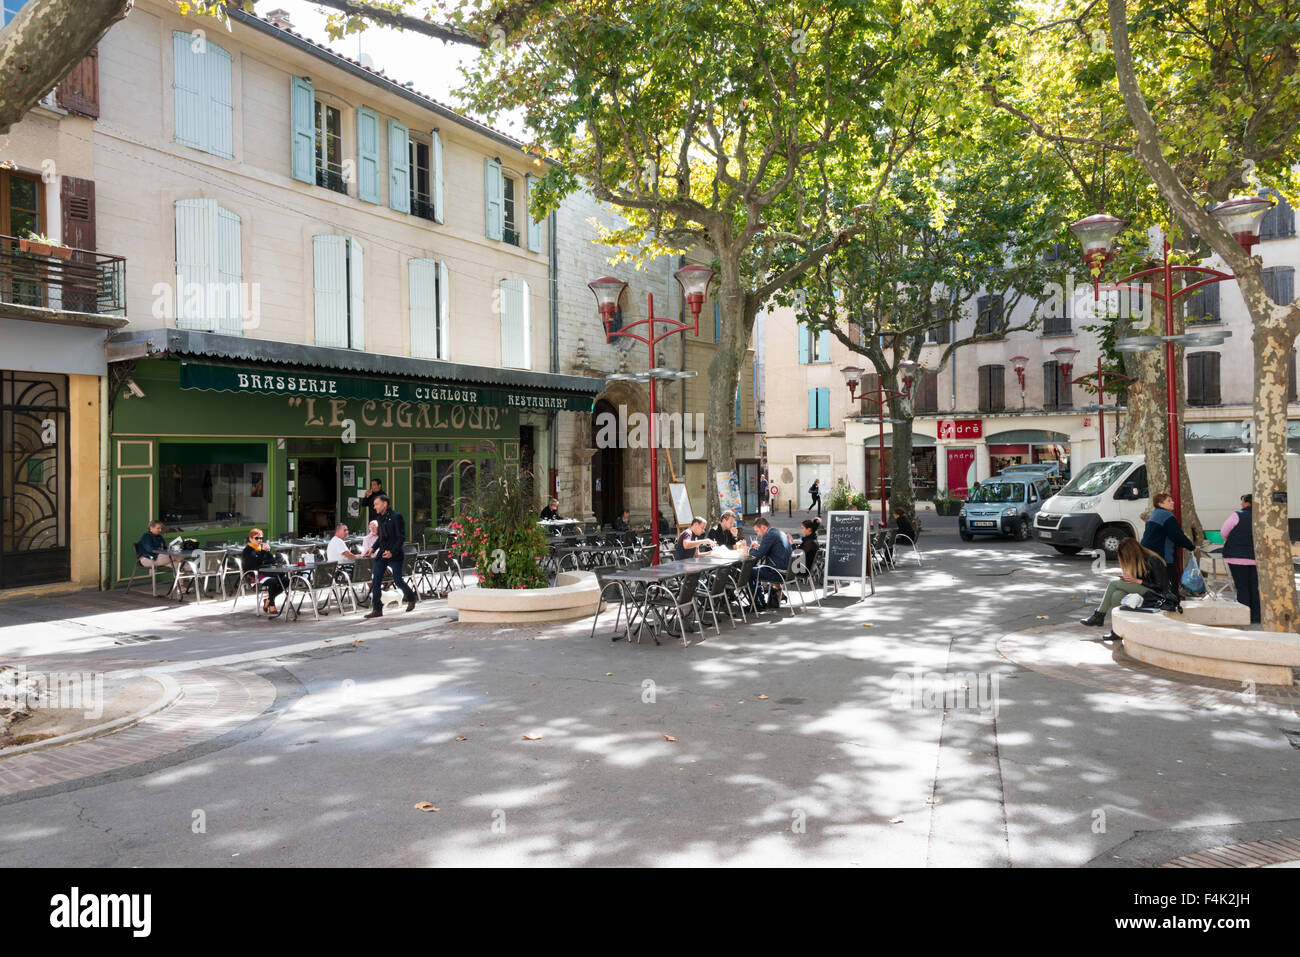 Le Cigaloun restaurant dans la ville provençale de Manosque Provence France Banque D'Images